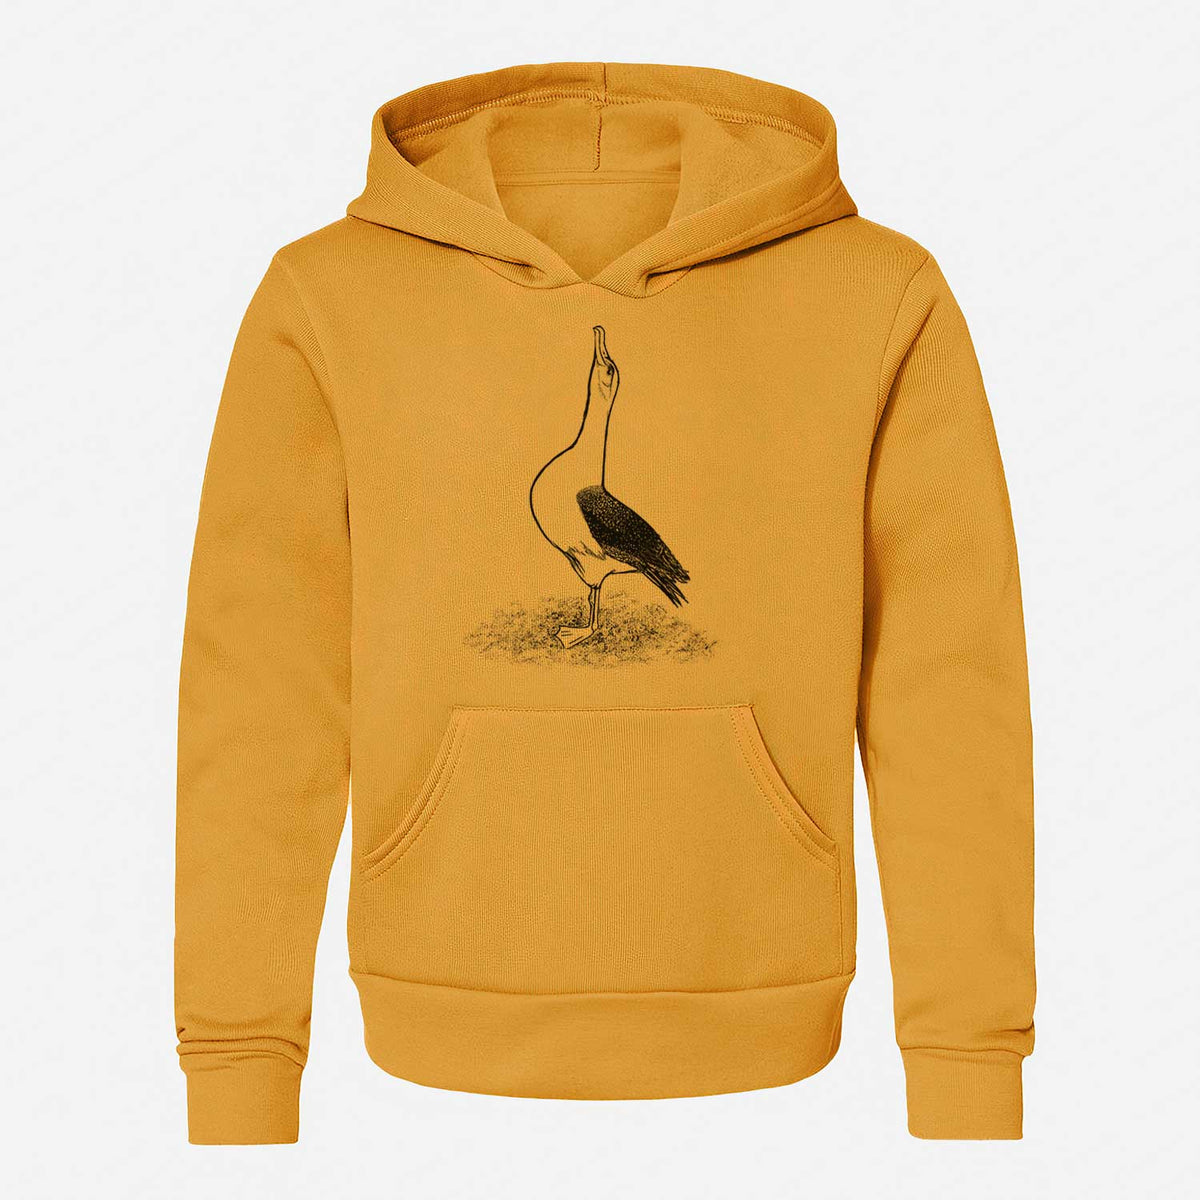 Diomedea exulans - Wandering Albatross - Youth Hoodie Sweatshirt